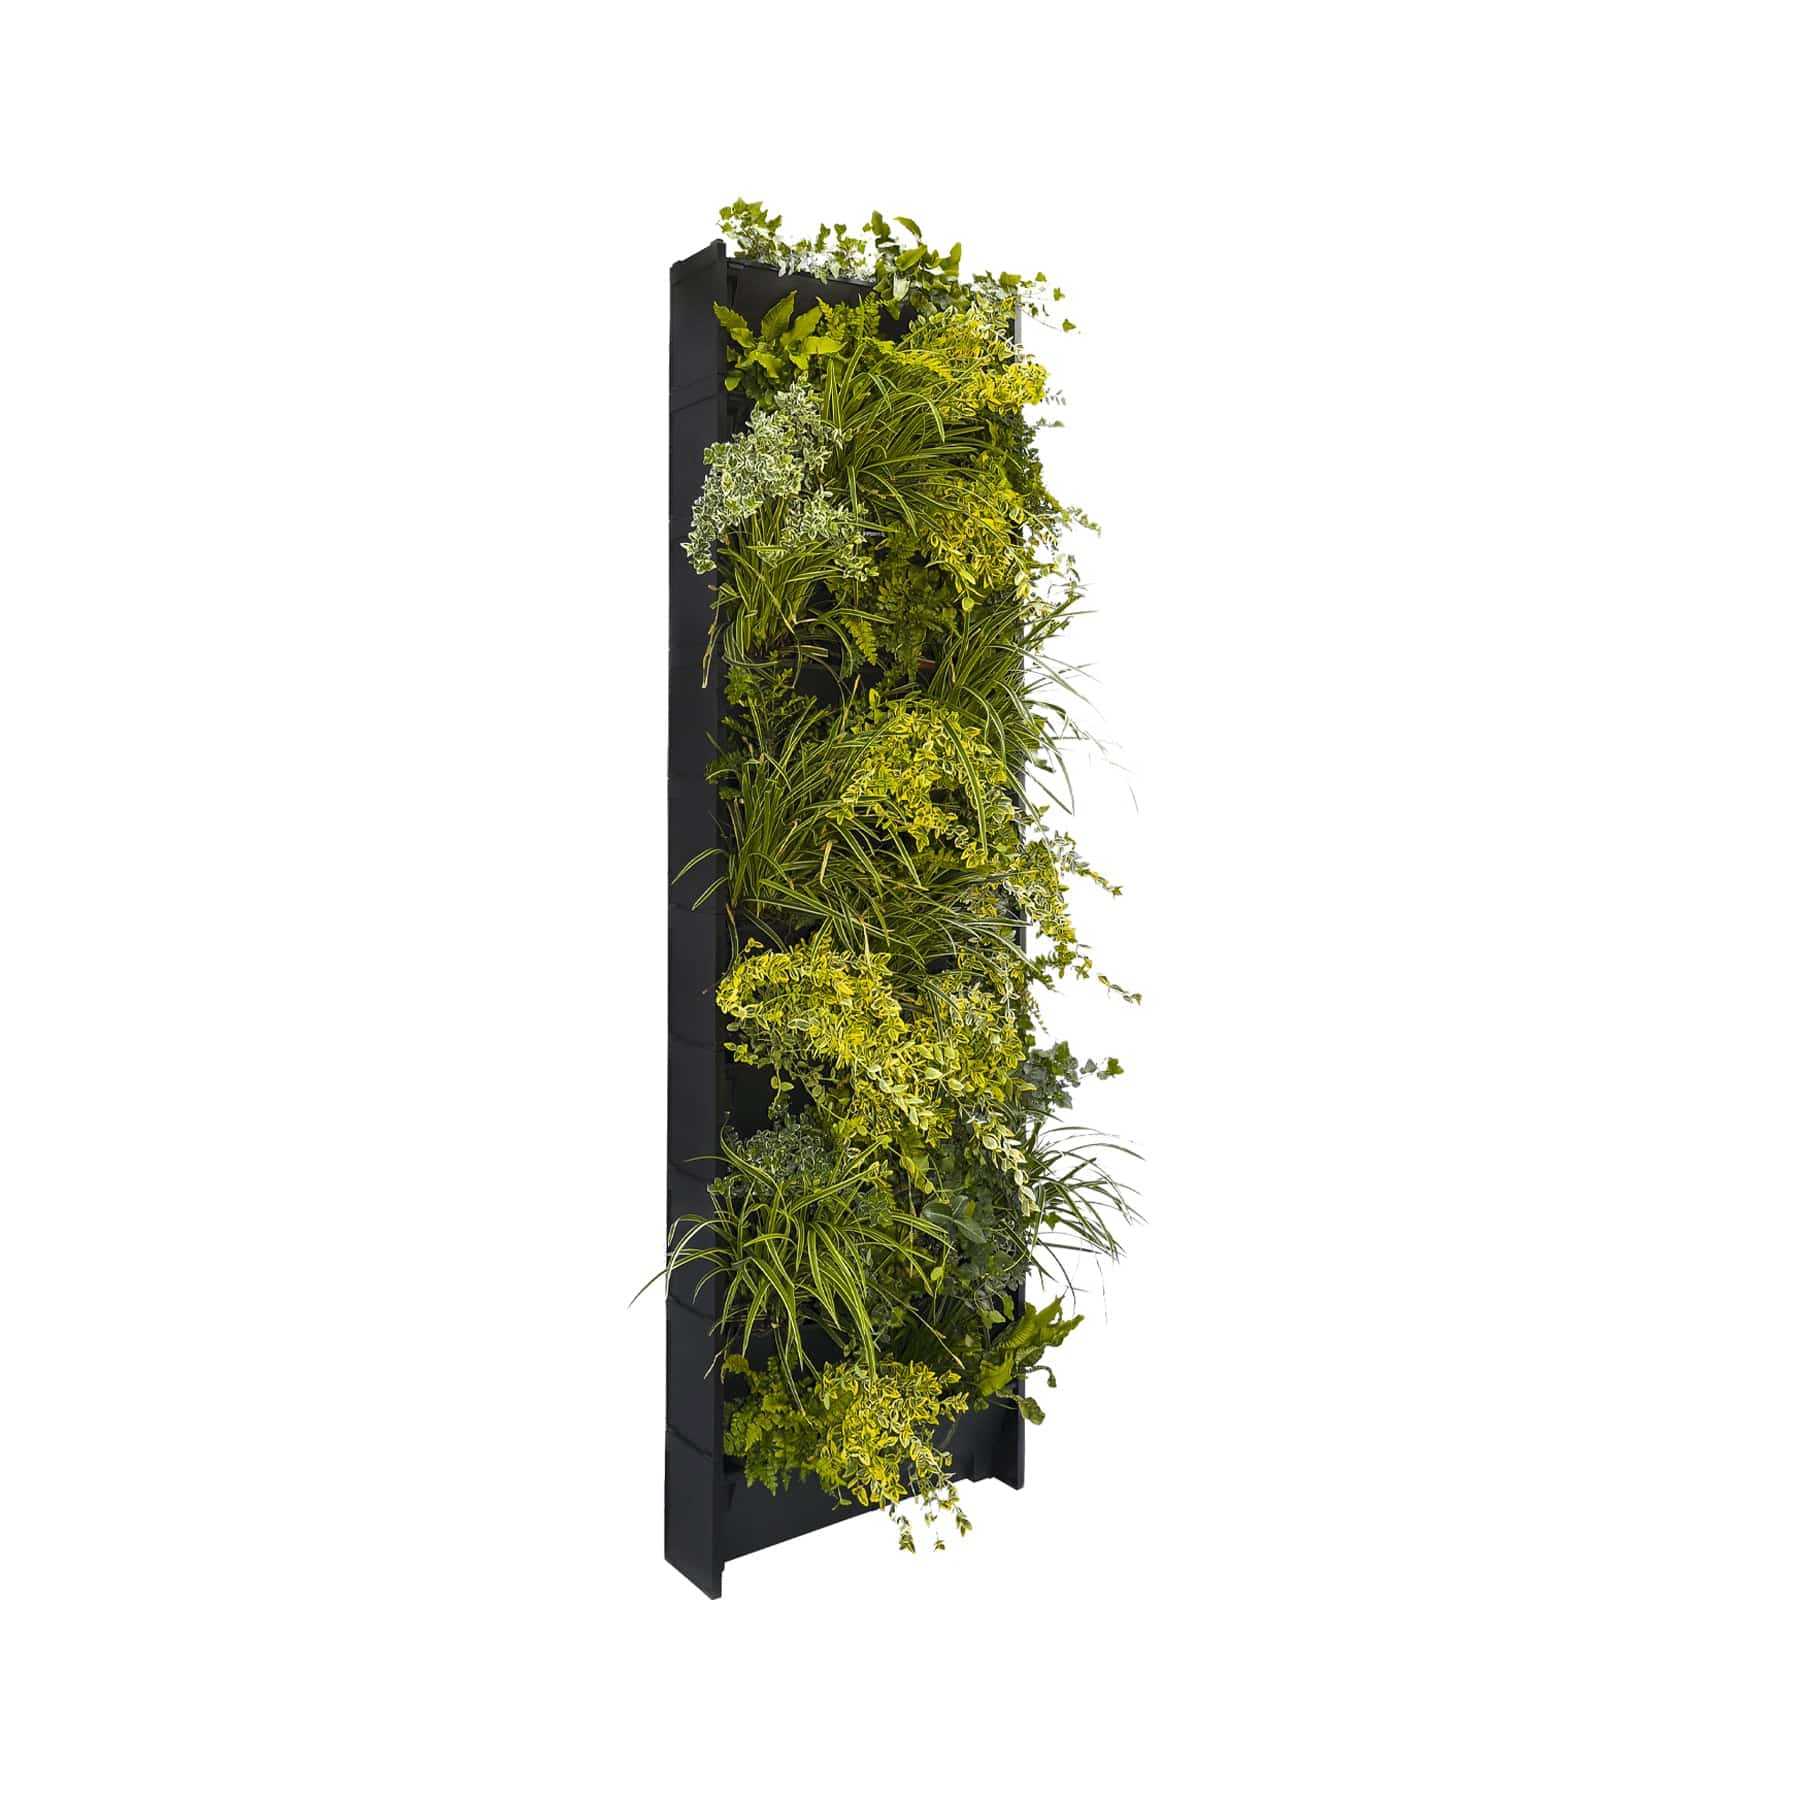 PlantBox vertical planters